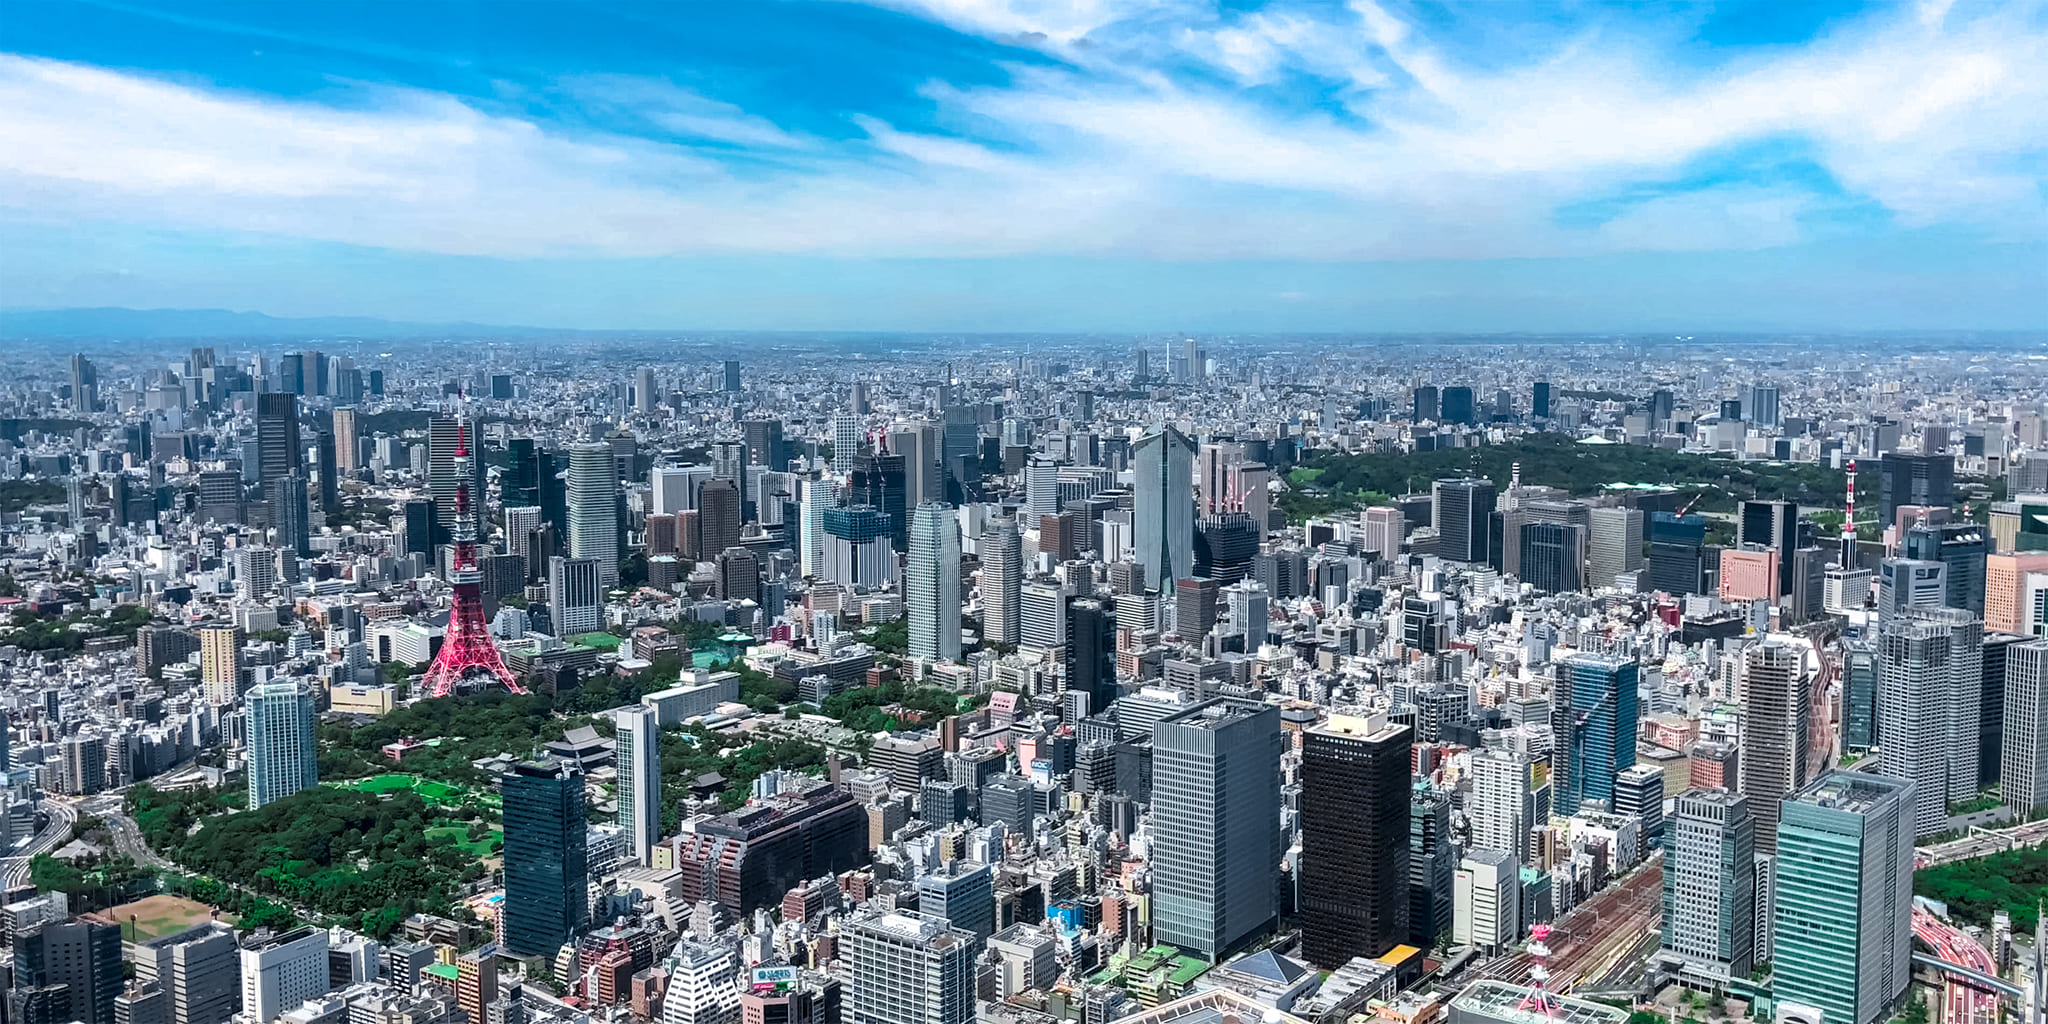 ヘリコプターで東京上空をフライトして見える芝公園